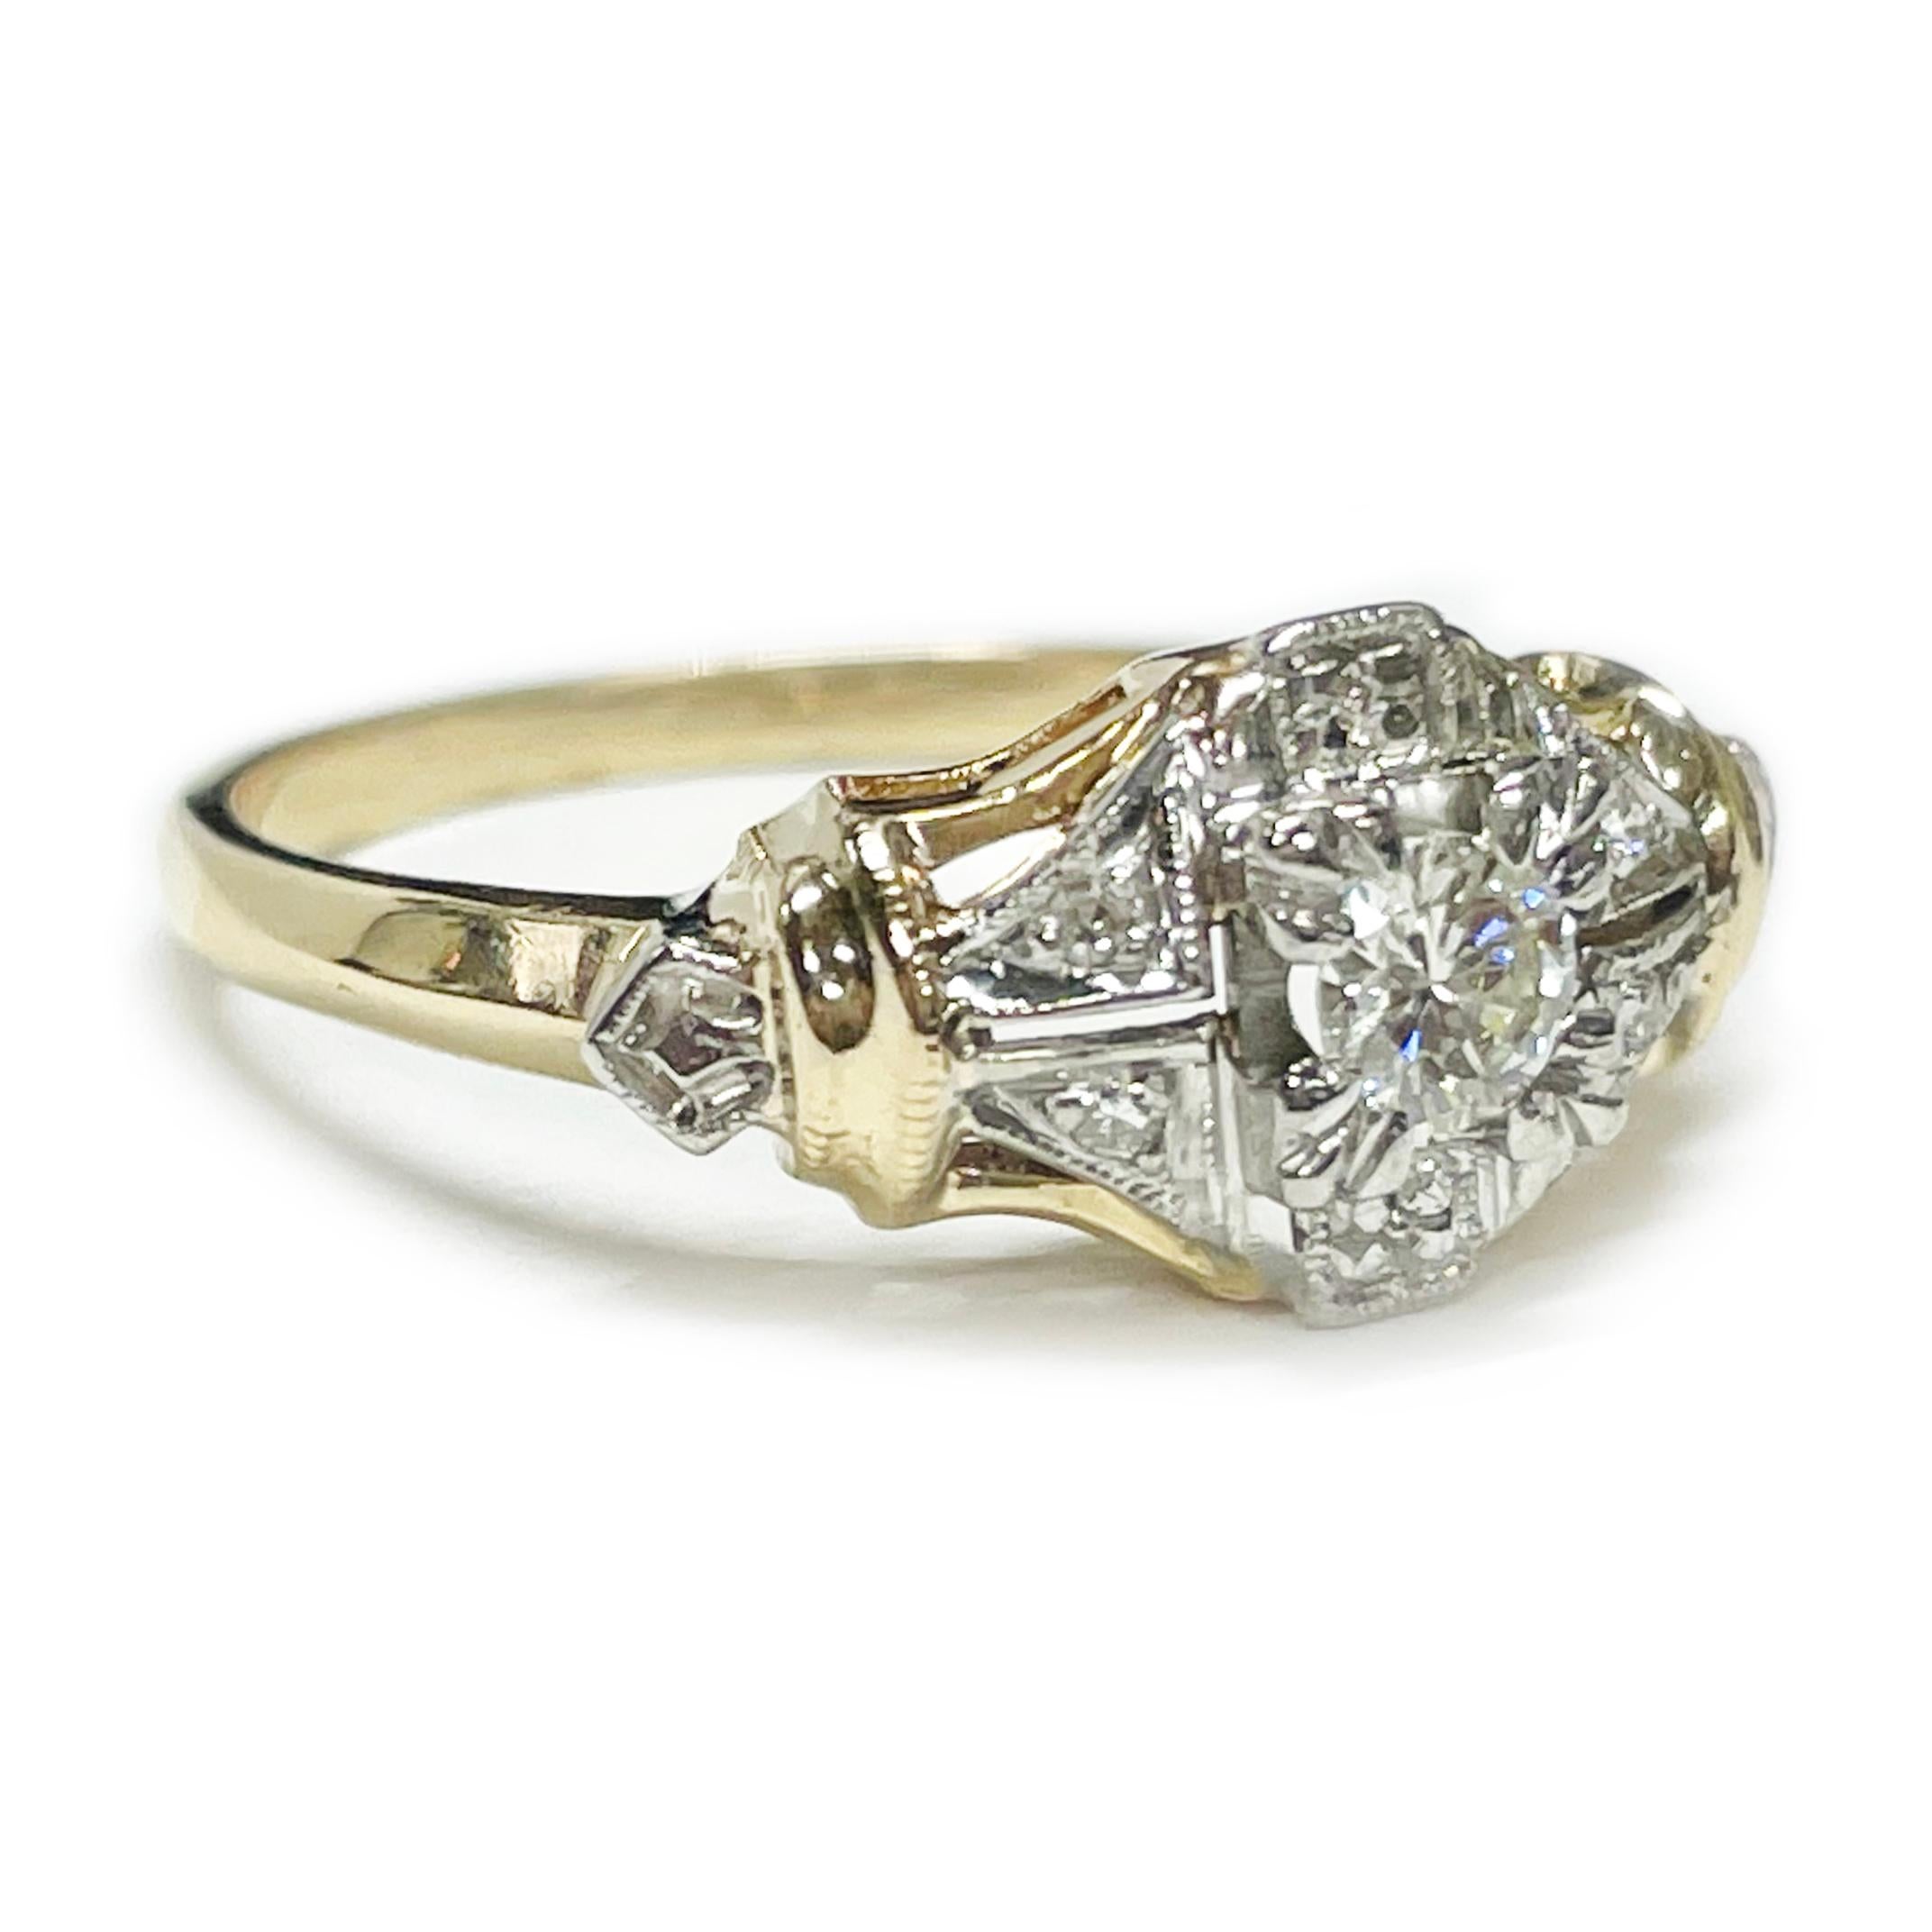 Art Deco Stil (Replik) Gelb- und Weißgold Diamantring. In der Mitte des Rings befindet sich ein runder Diamant im Brillantschliff mit einer Größe von 3 mm. Außerdem gibt es vier runde Nahkampfdiamanten und einige diamantgeschliffene Fassungen. Die